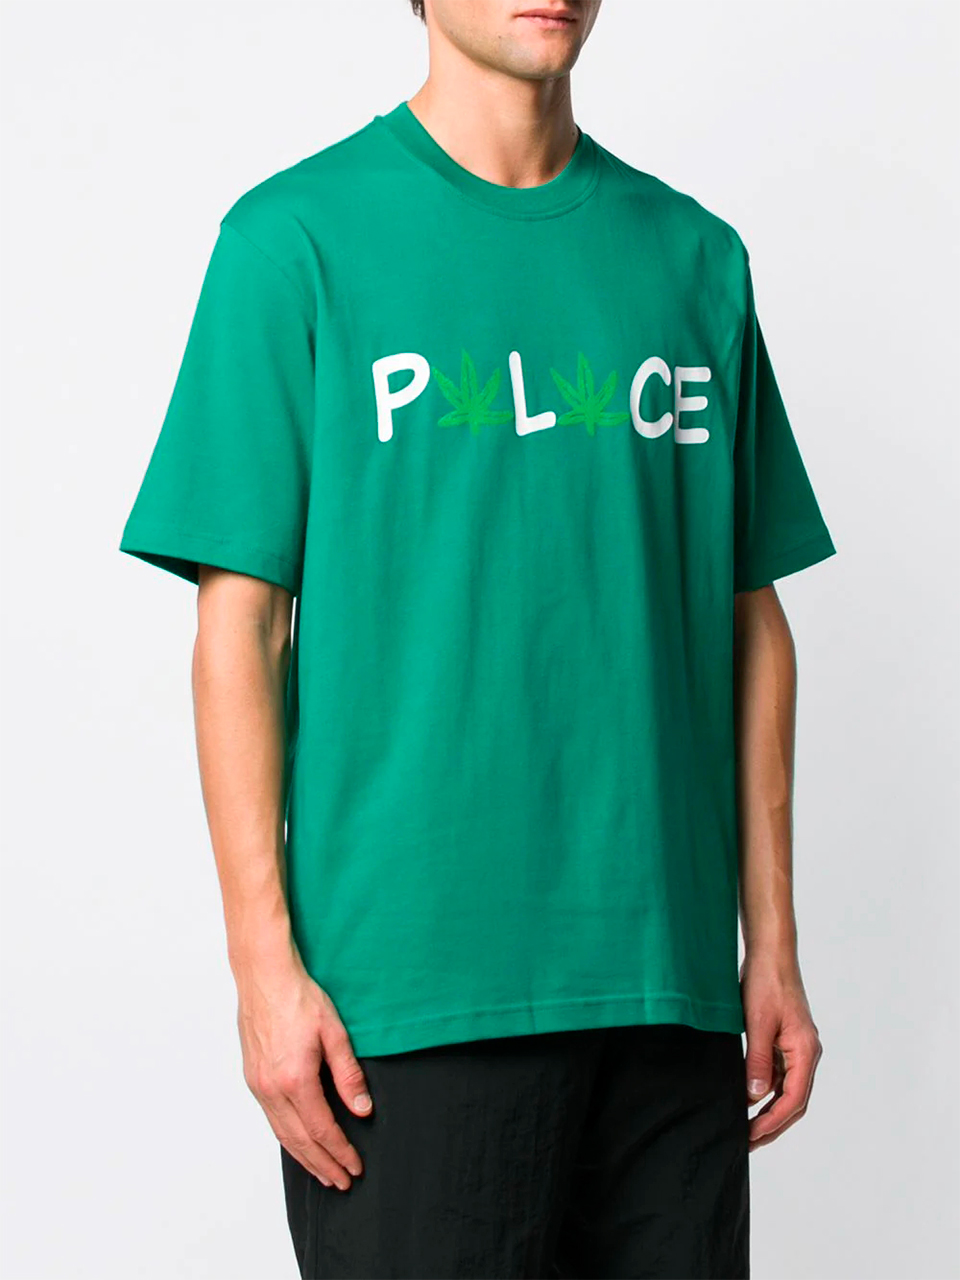 Imagem de: Camiseta Palace Verde Estampa Pwlwce